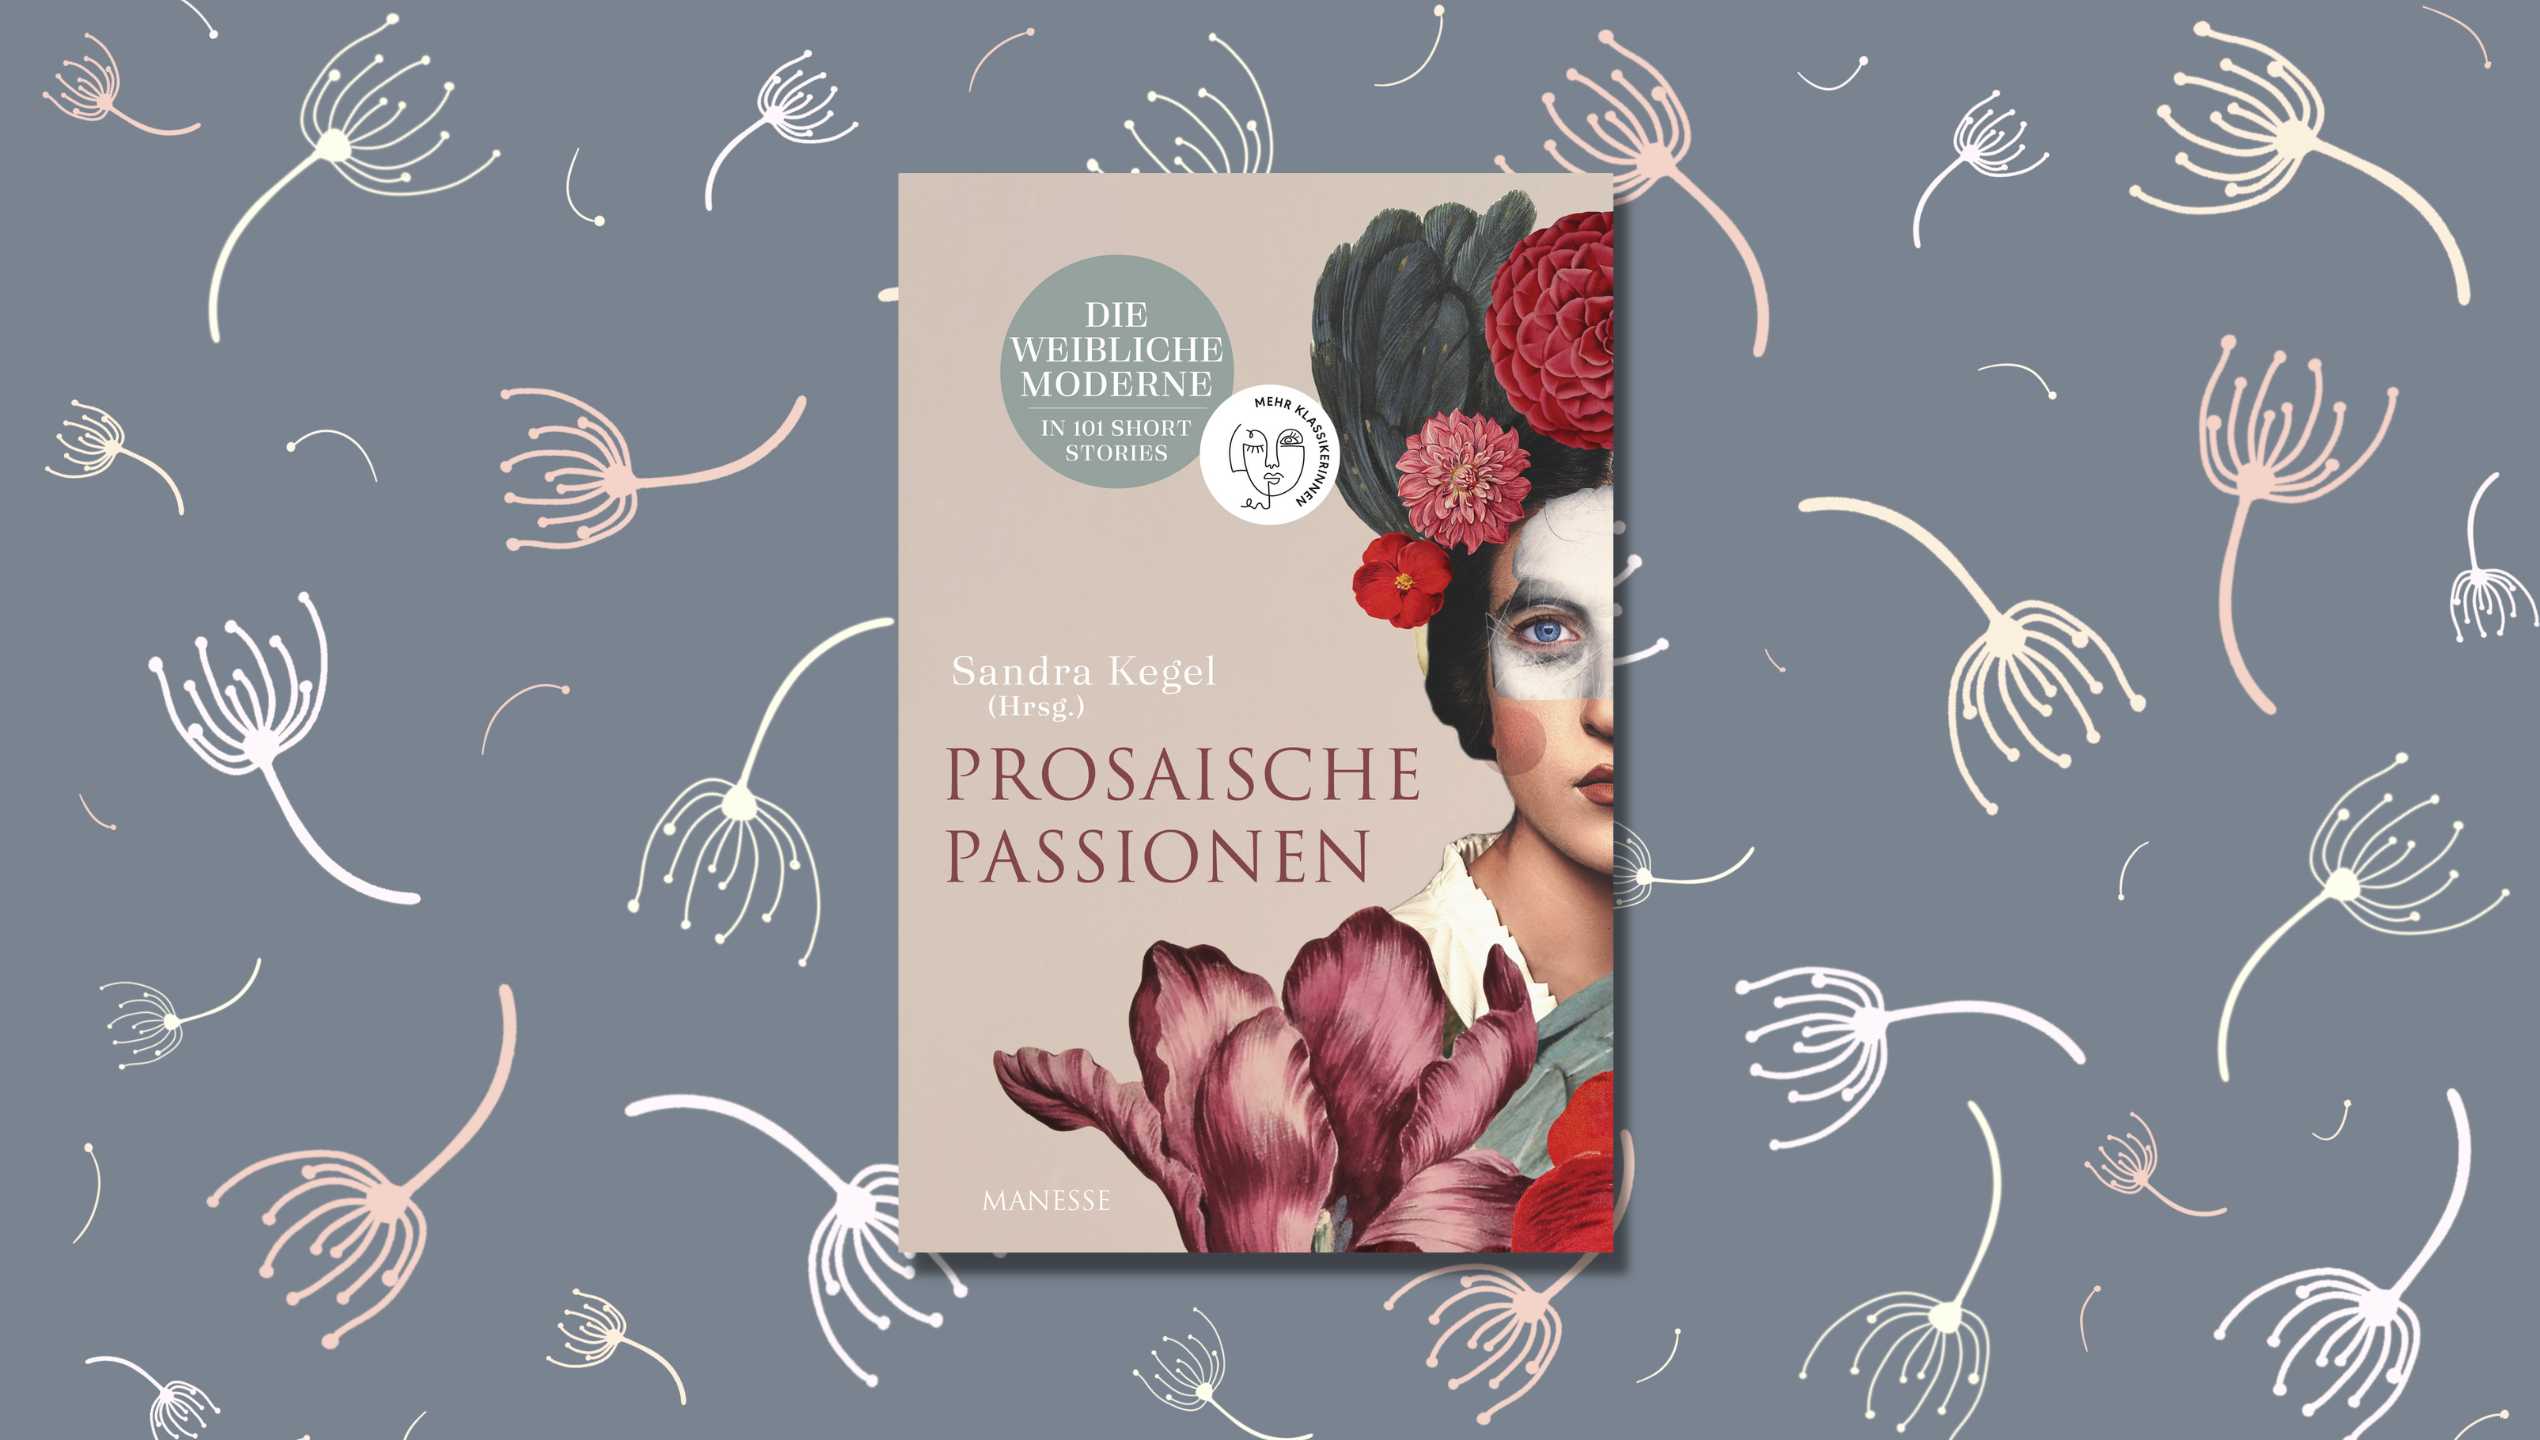 Simone Glöckler empfiehlt die weibliche Anthologie von Herausgeberin Sandra Kegel ohne Einschränkung. Ein Must-have fürs Bücherregal.